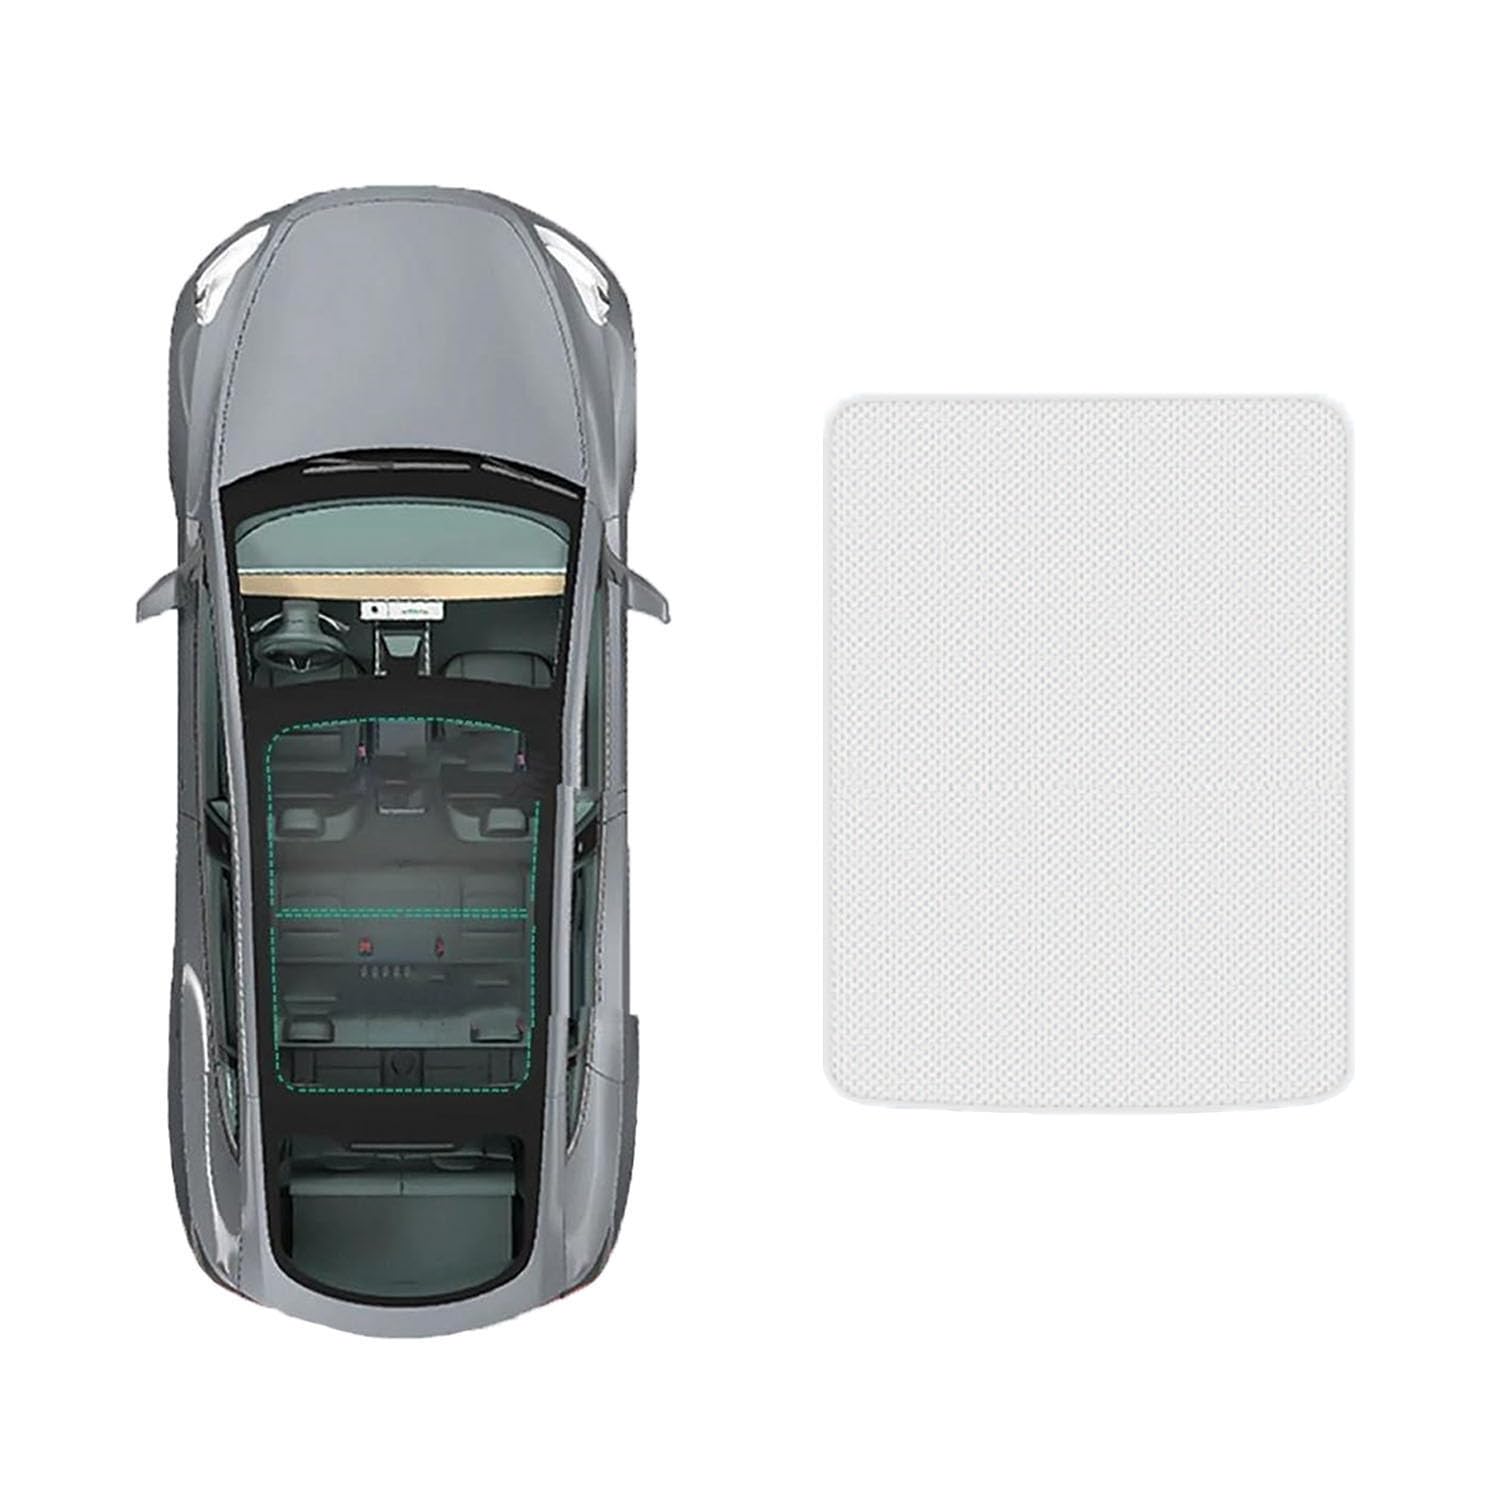 Für VW CC 2010-2015 Auto-Schiebedach-Beschattung,Dach Wärme Isolierung Anti-UV Visier Auto Zubehör,A-Gray white regular Style von ANRAM